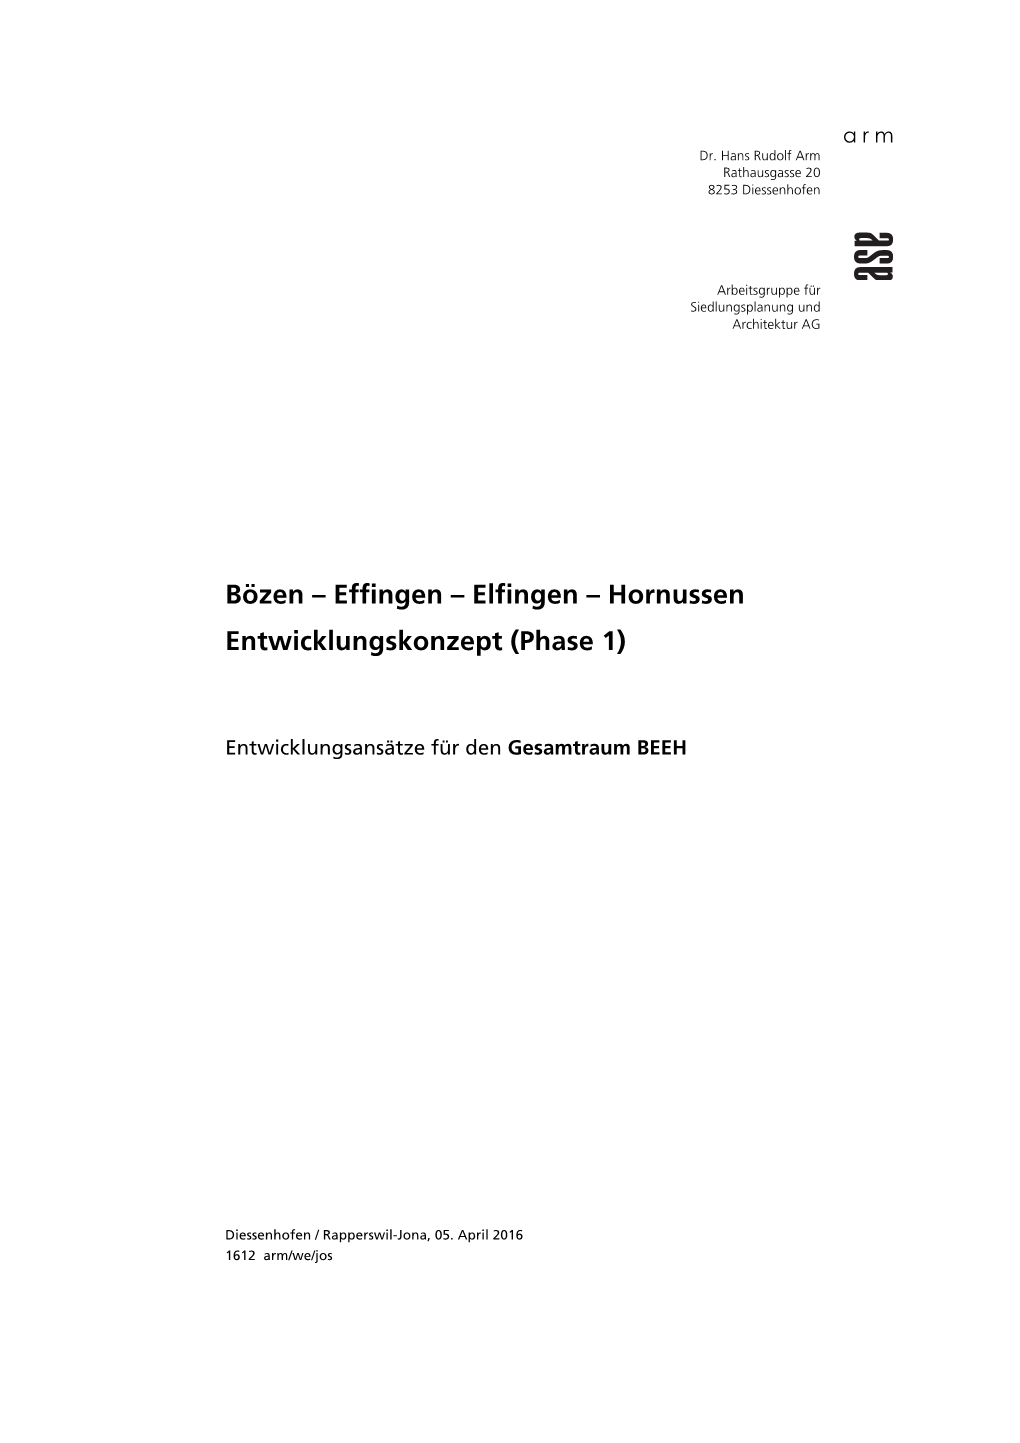 Bözen – Effingen – Elfingen – Hornussen Entwicklungskonzept (Phase 1)